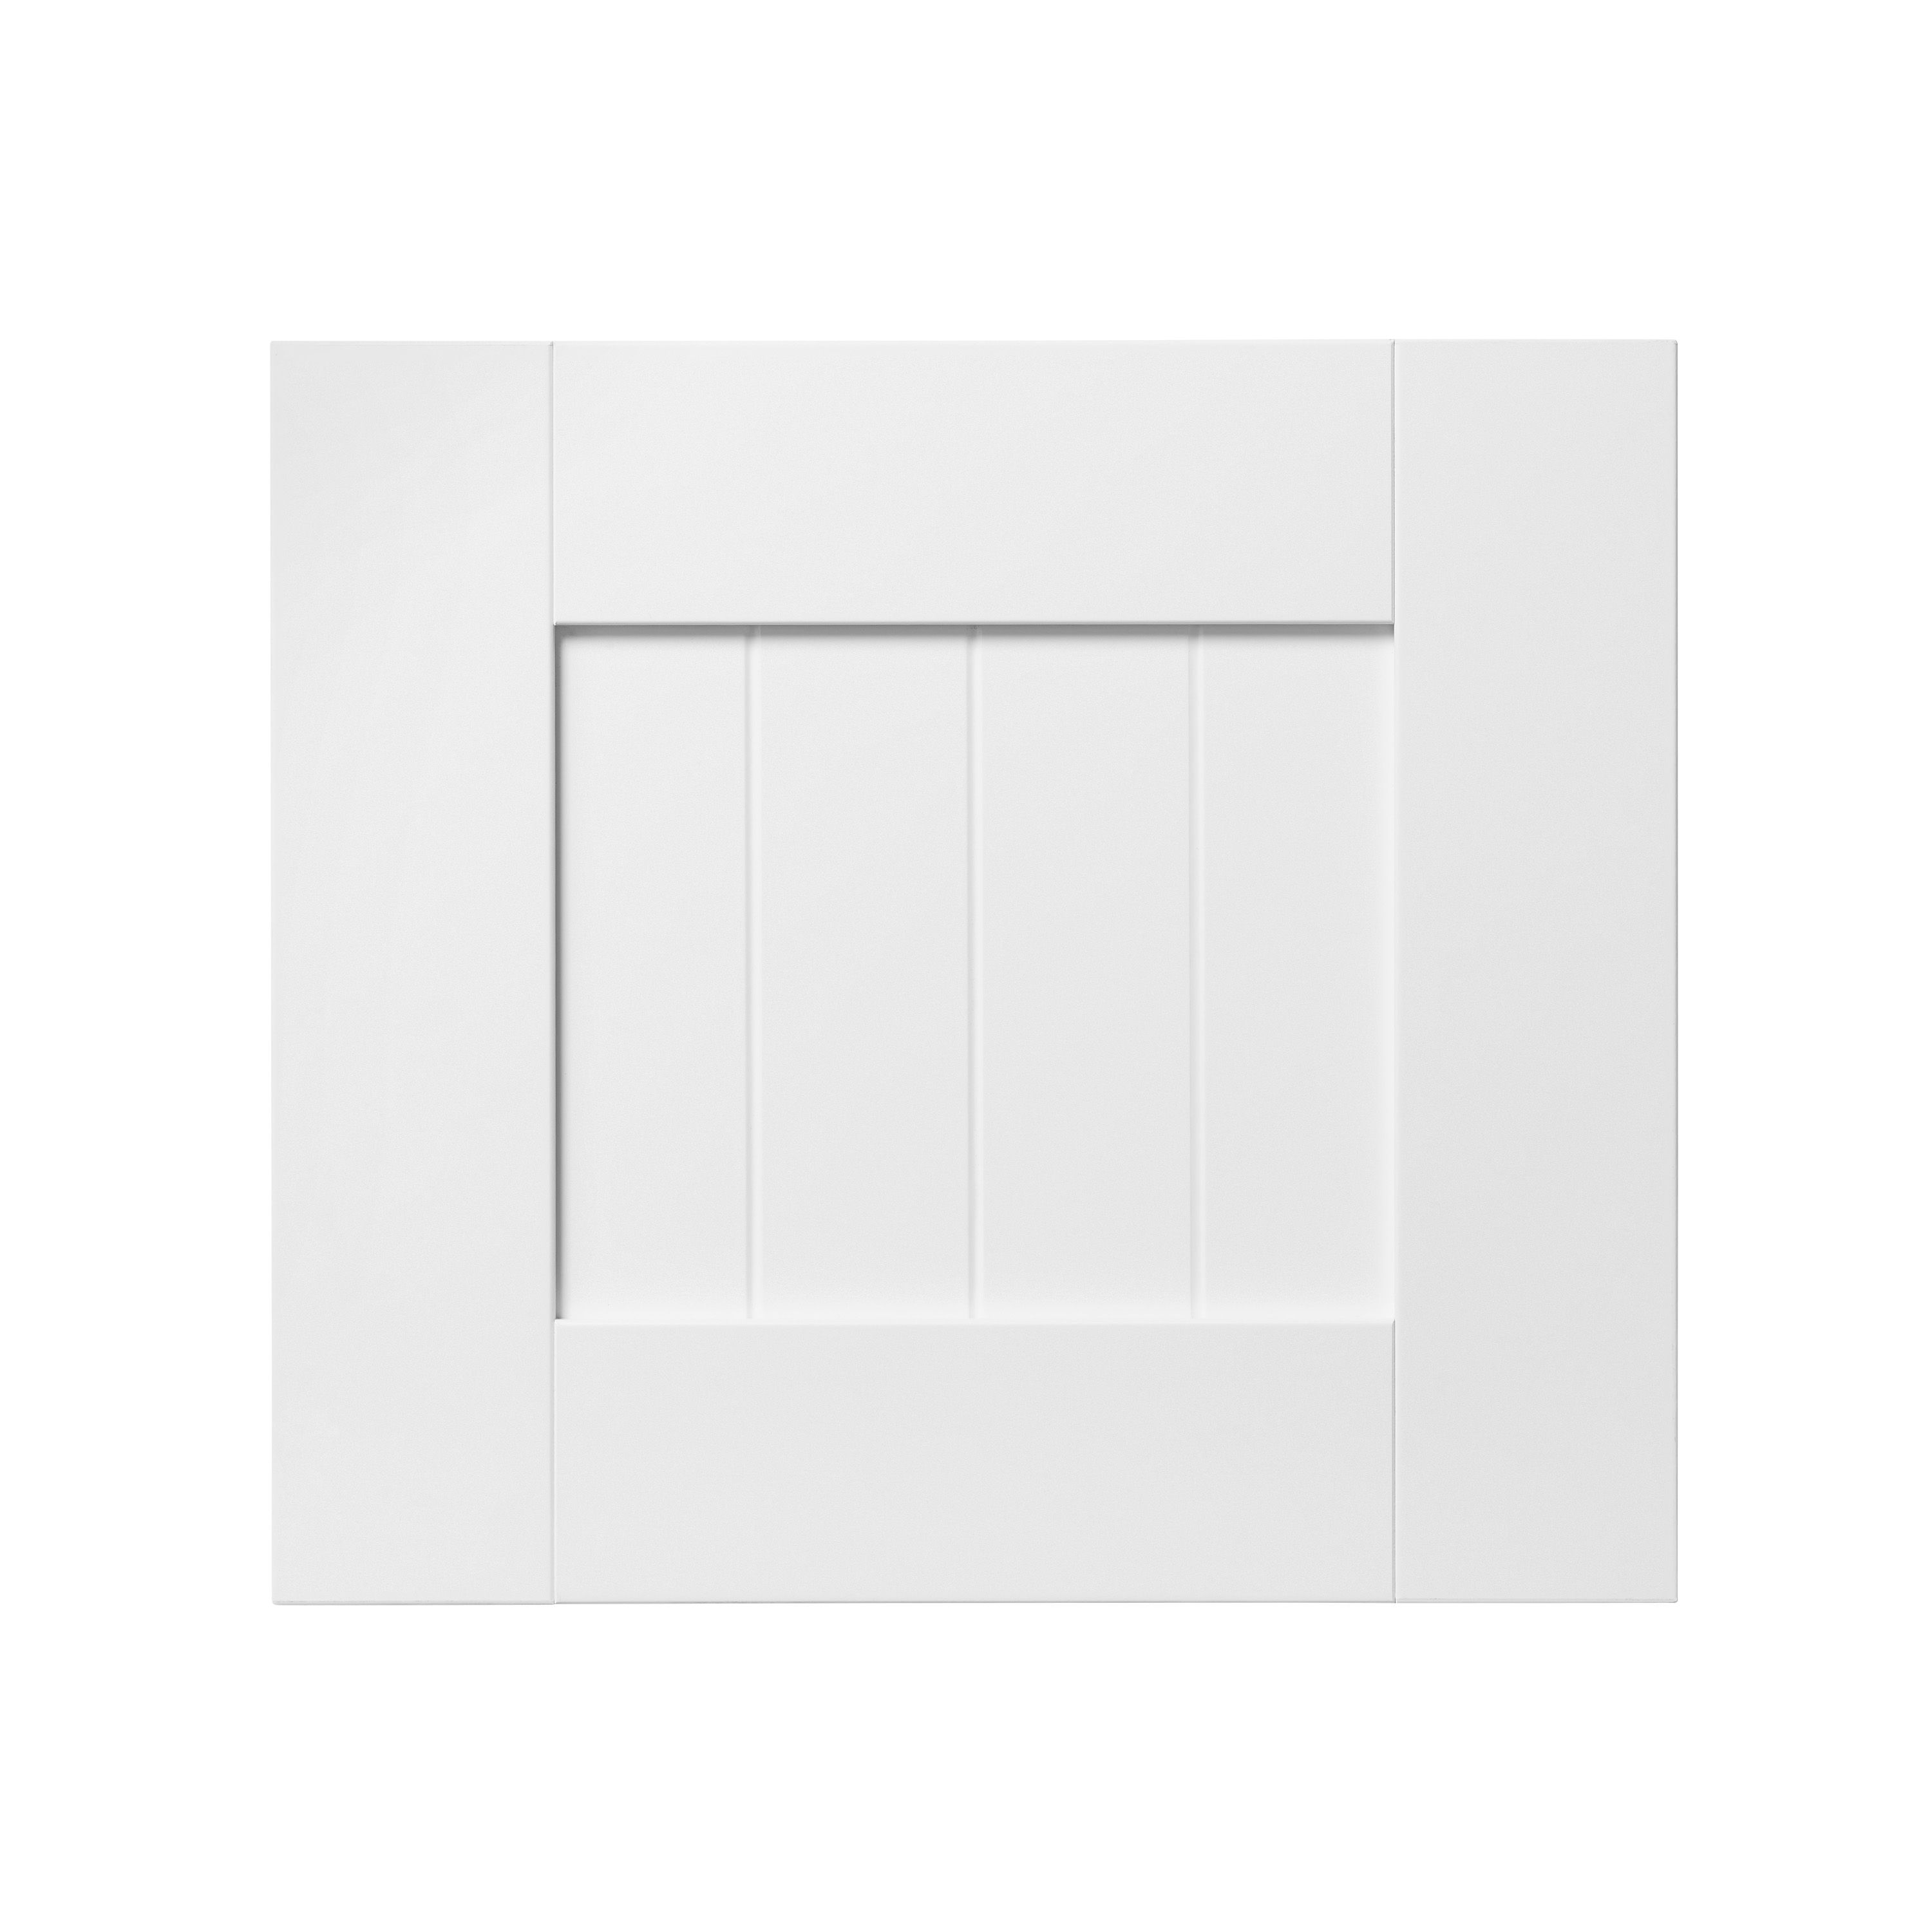 GoodHome Alpinia Matt white Drawer front, bridging door & bi fold door, (W)400mm (H)356mm (T)18mm